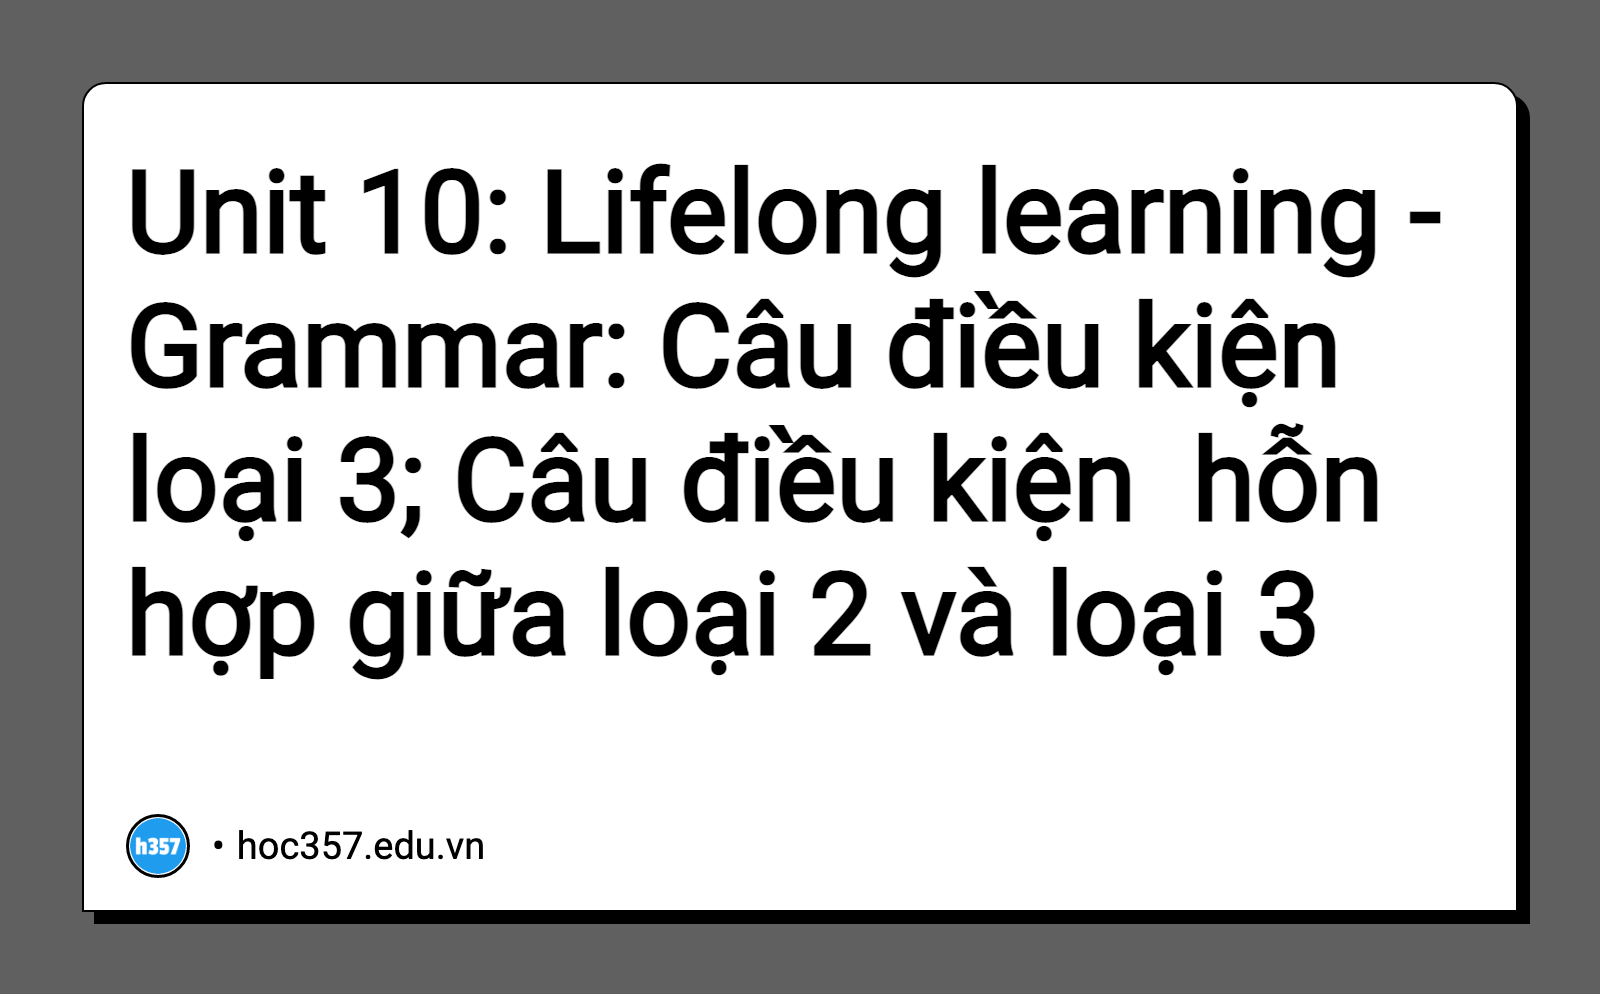 Hình minh họa Unit 10: Lifelong learning - Grammar: Câu điều kiện loại 3; Câu điều kiện  hỗn hợp giữa loại 2 và loại 3